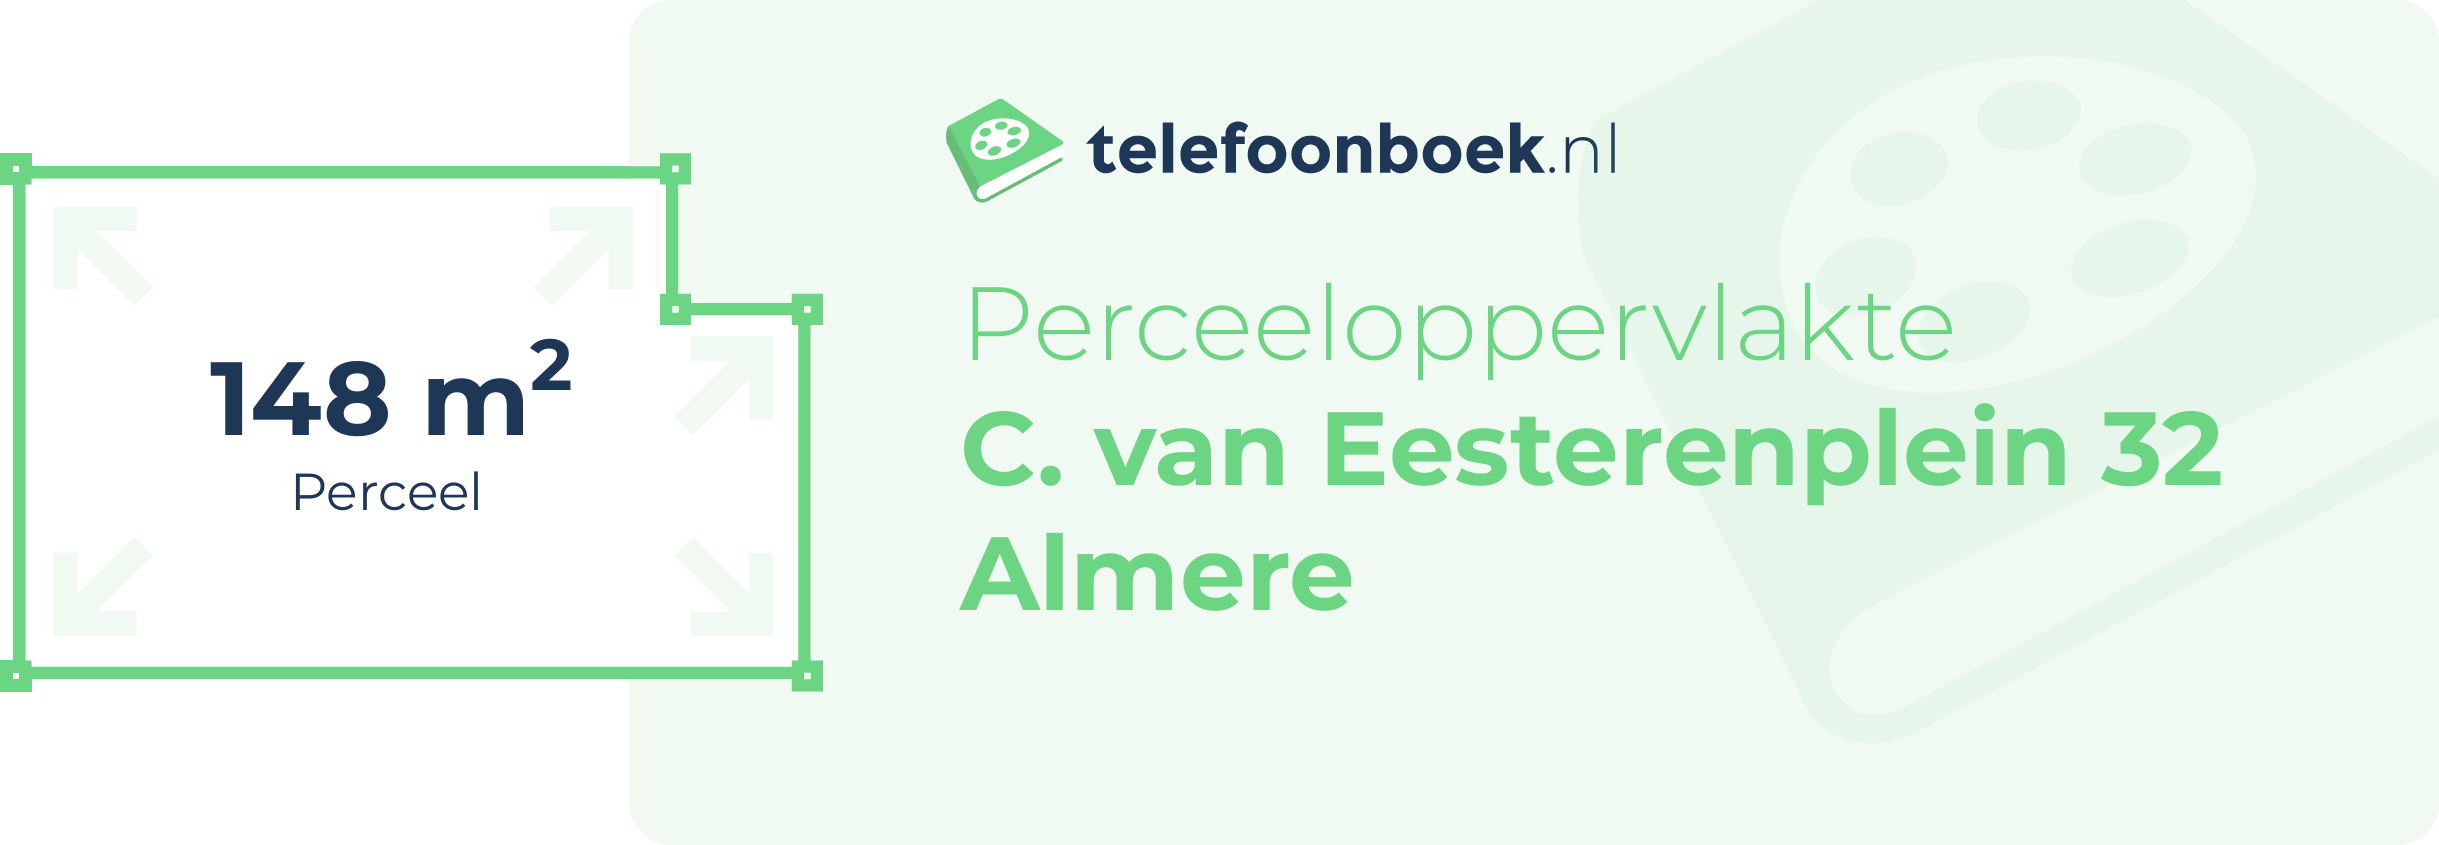 Perceeloppervlakte C. Van Eesterenplein 32 Almere